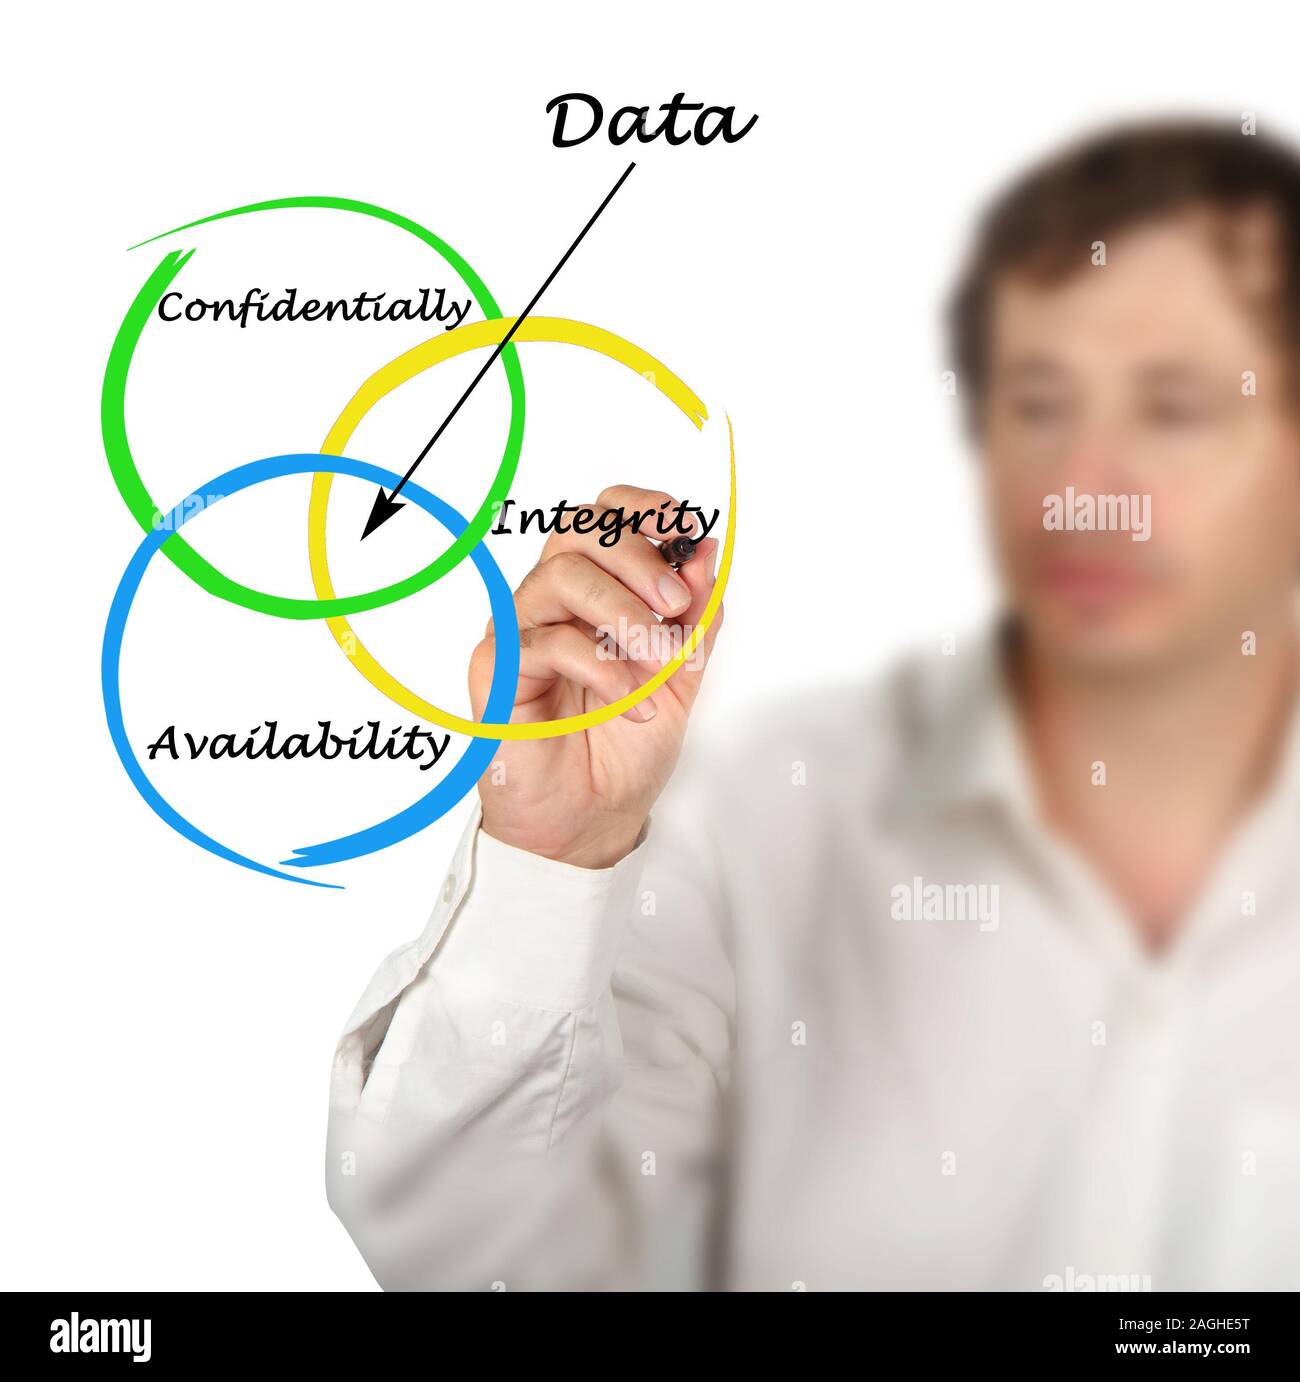 Data properties Stock Photo